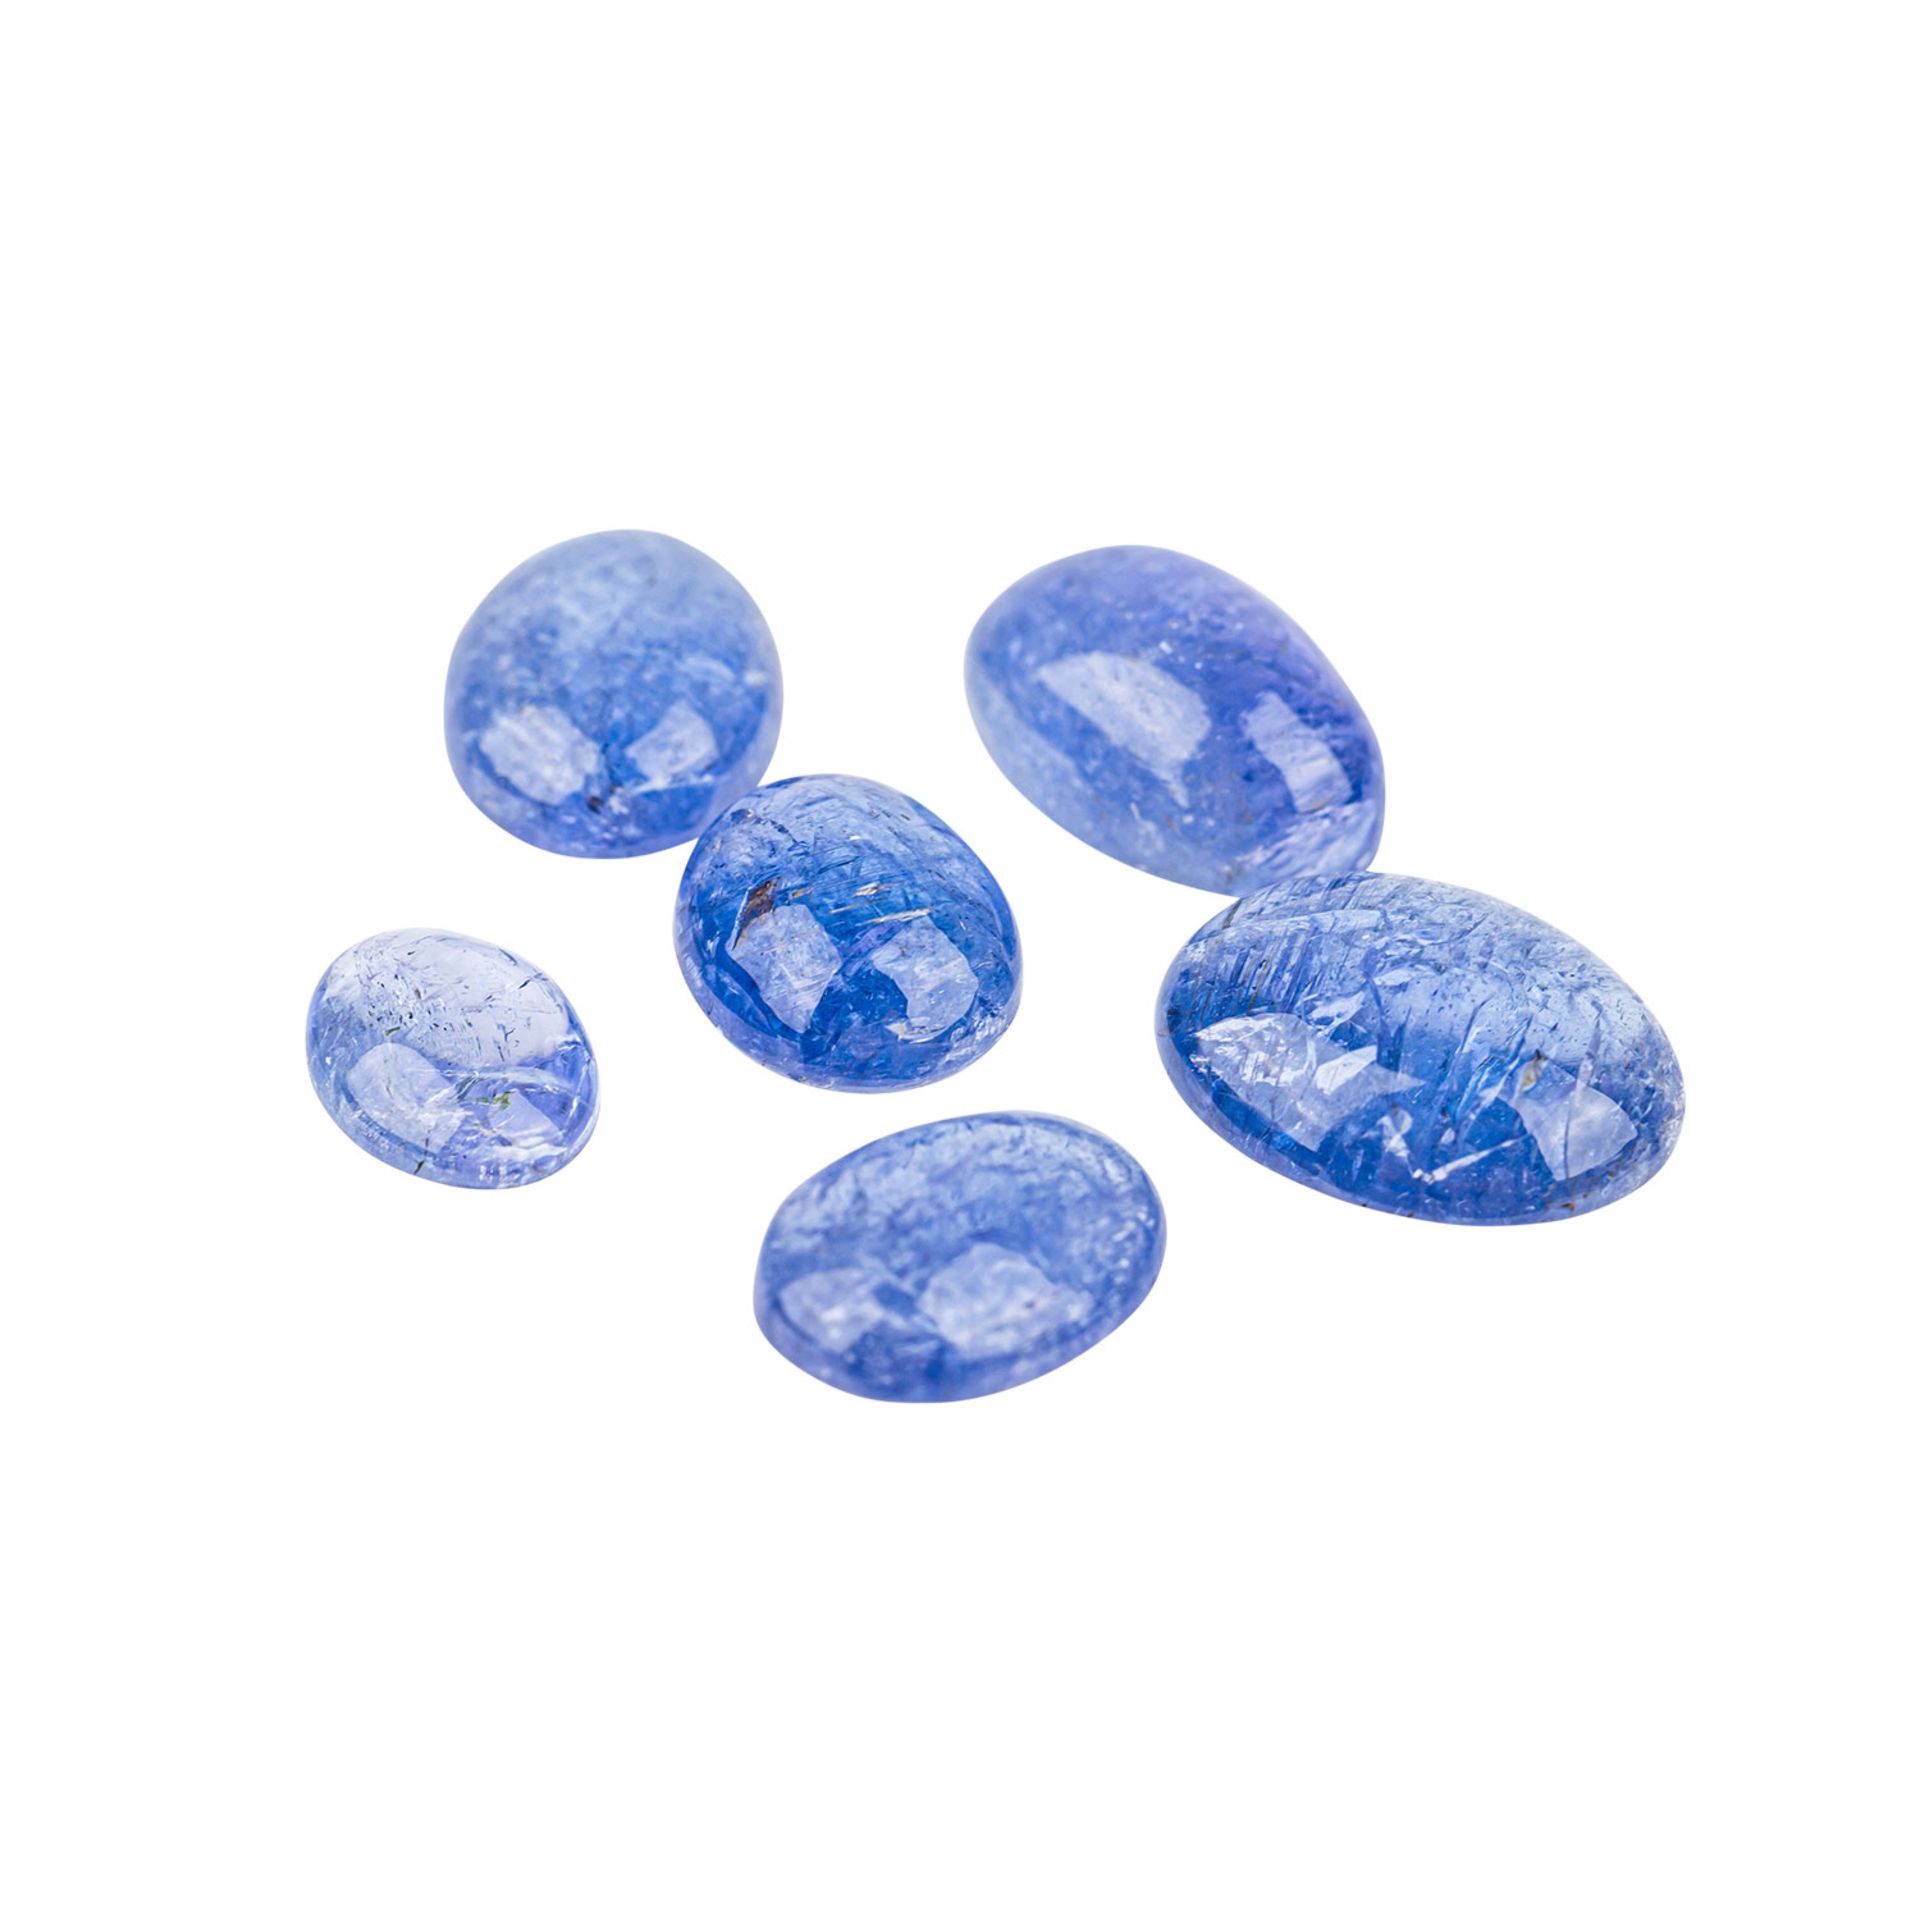 Tansanit Cabochon (6), insgesamt 32,38 ct.,in blau und blau violetten Tönen in unterschiedlichen - Image 3 of 4